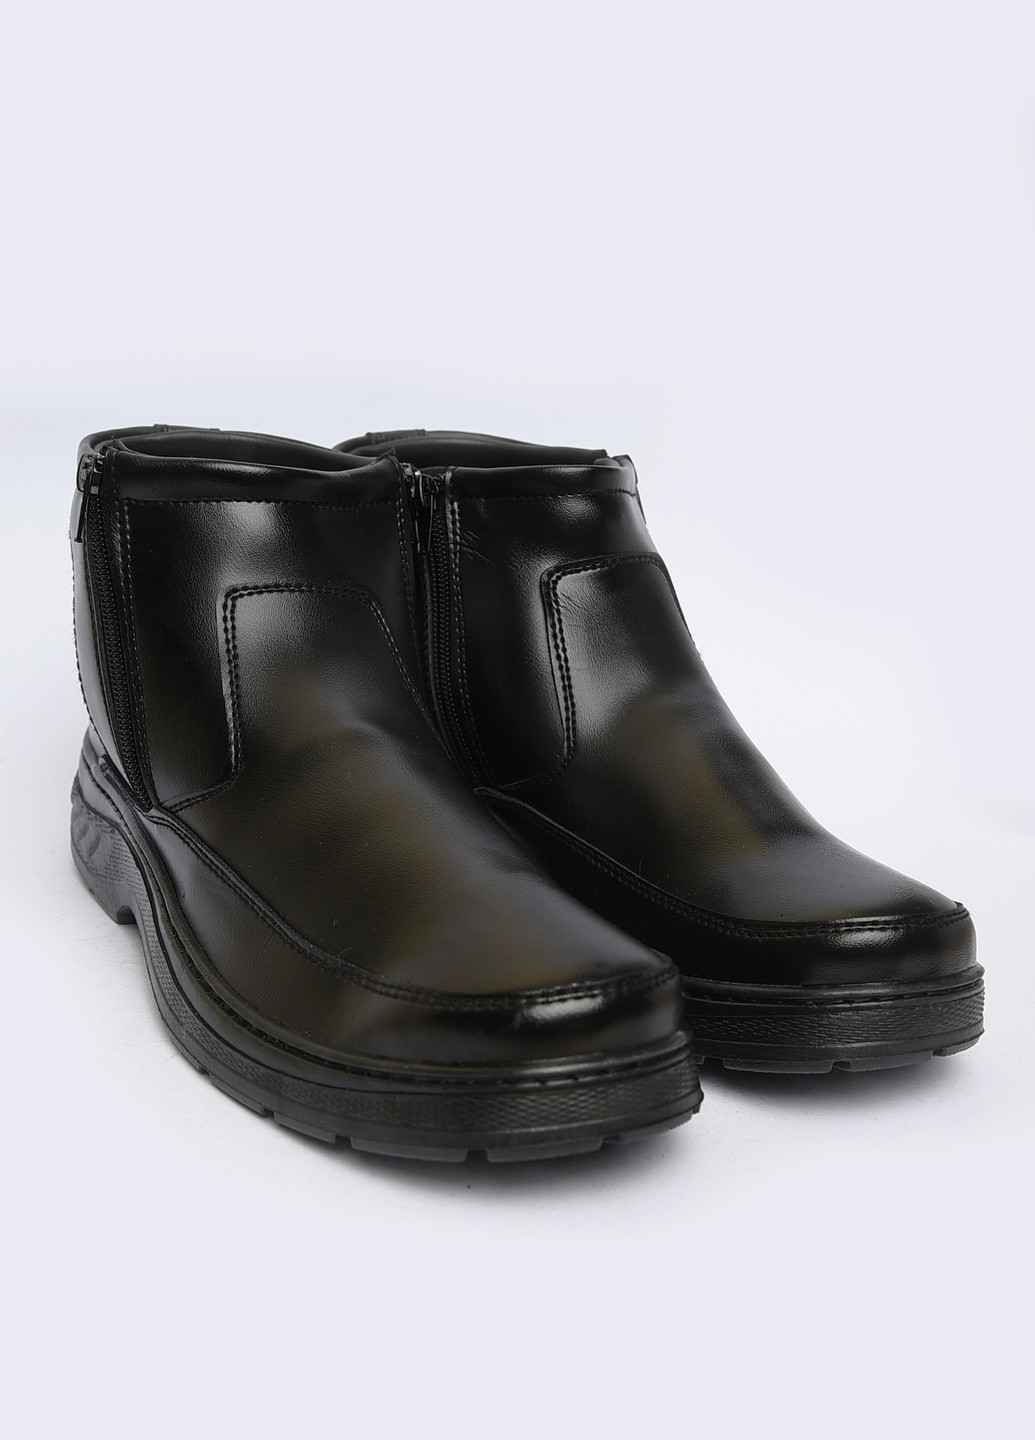 Черные зимние ботинки мужские еврозима черные Let's Shop